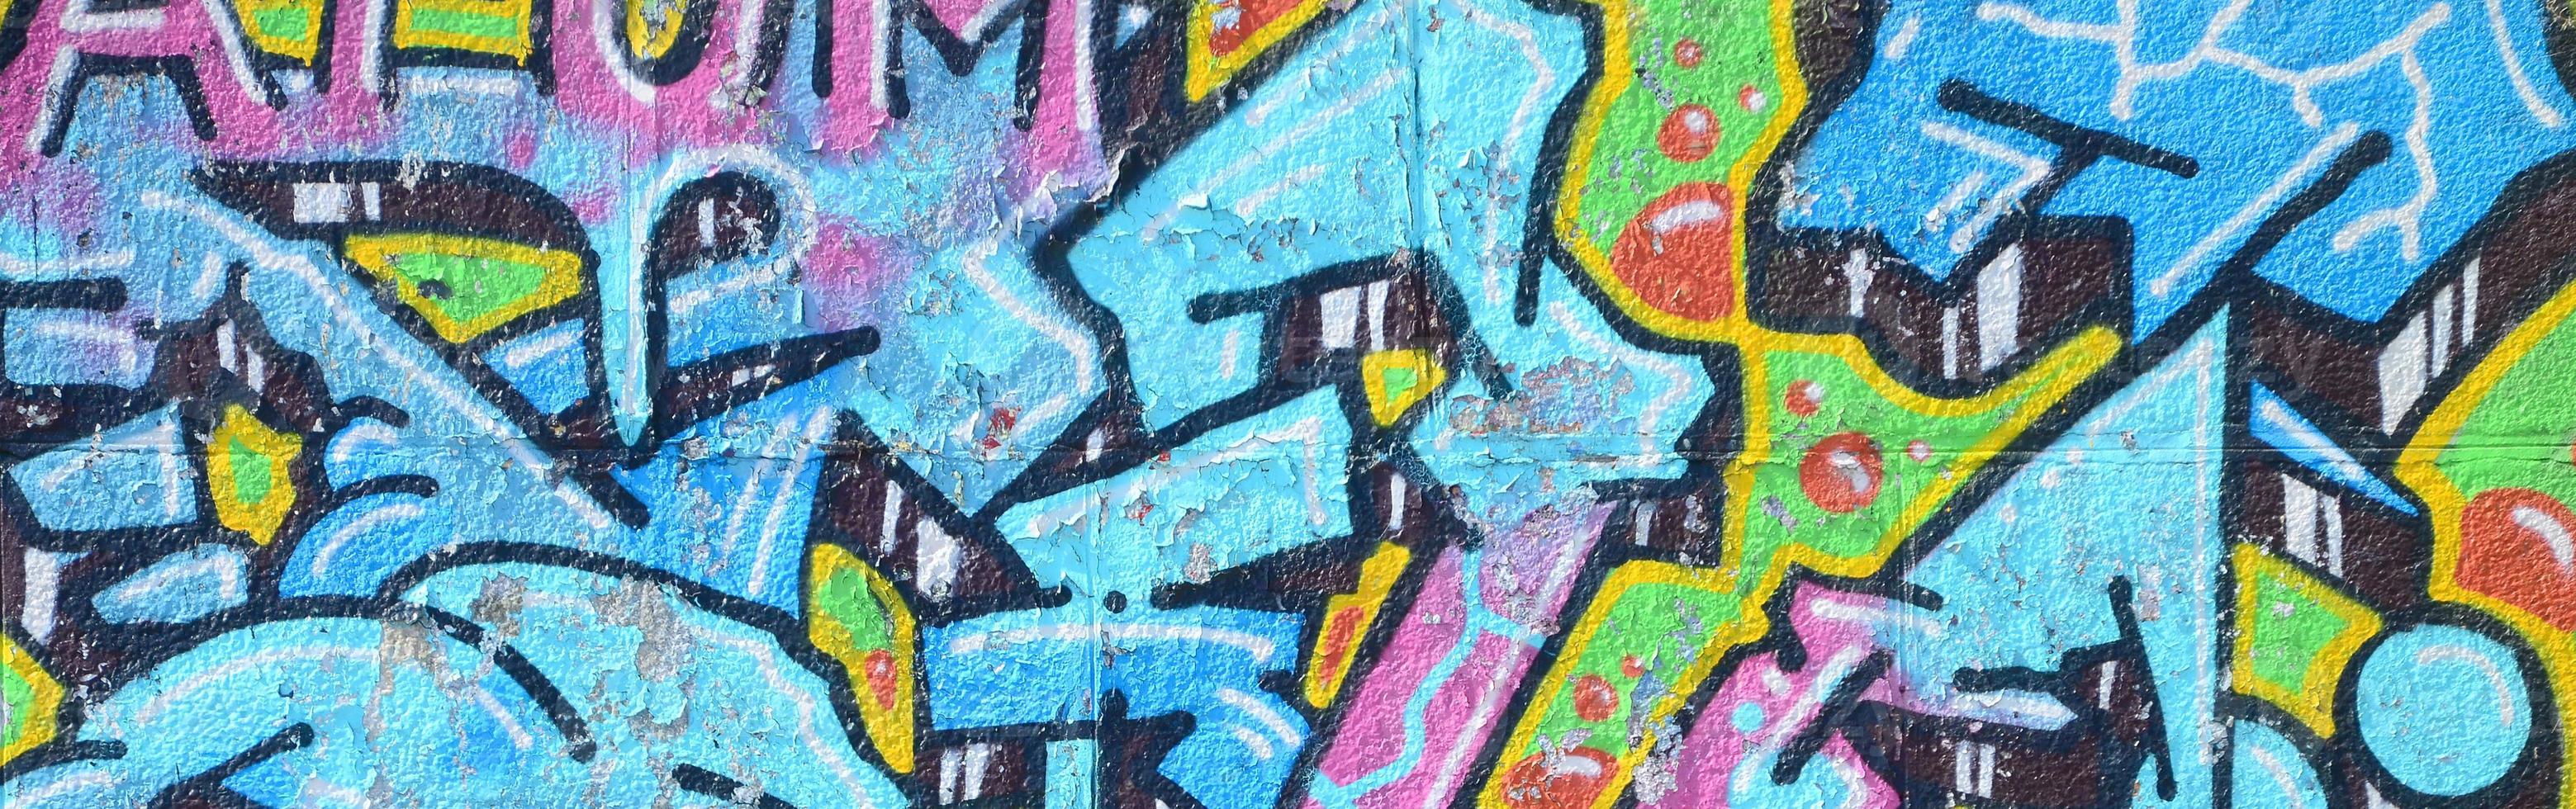 fragment van graffiti tekeningen. de oud muur versierd met verf vlekken in de stijl van straat kunst cultuur. gekleurde achtergrond structuur in verkoudheid tonen foto